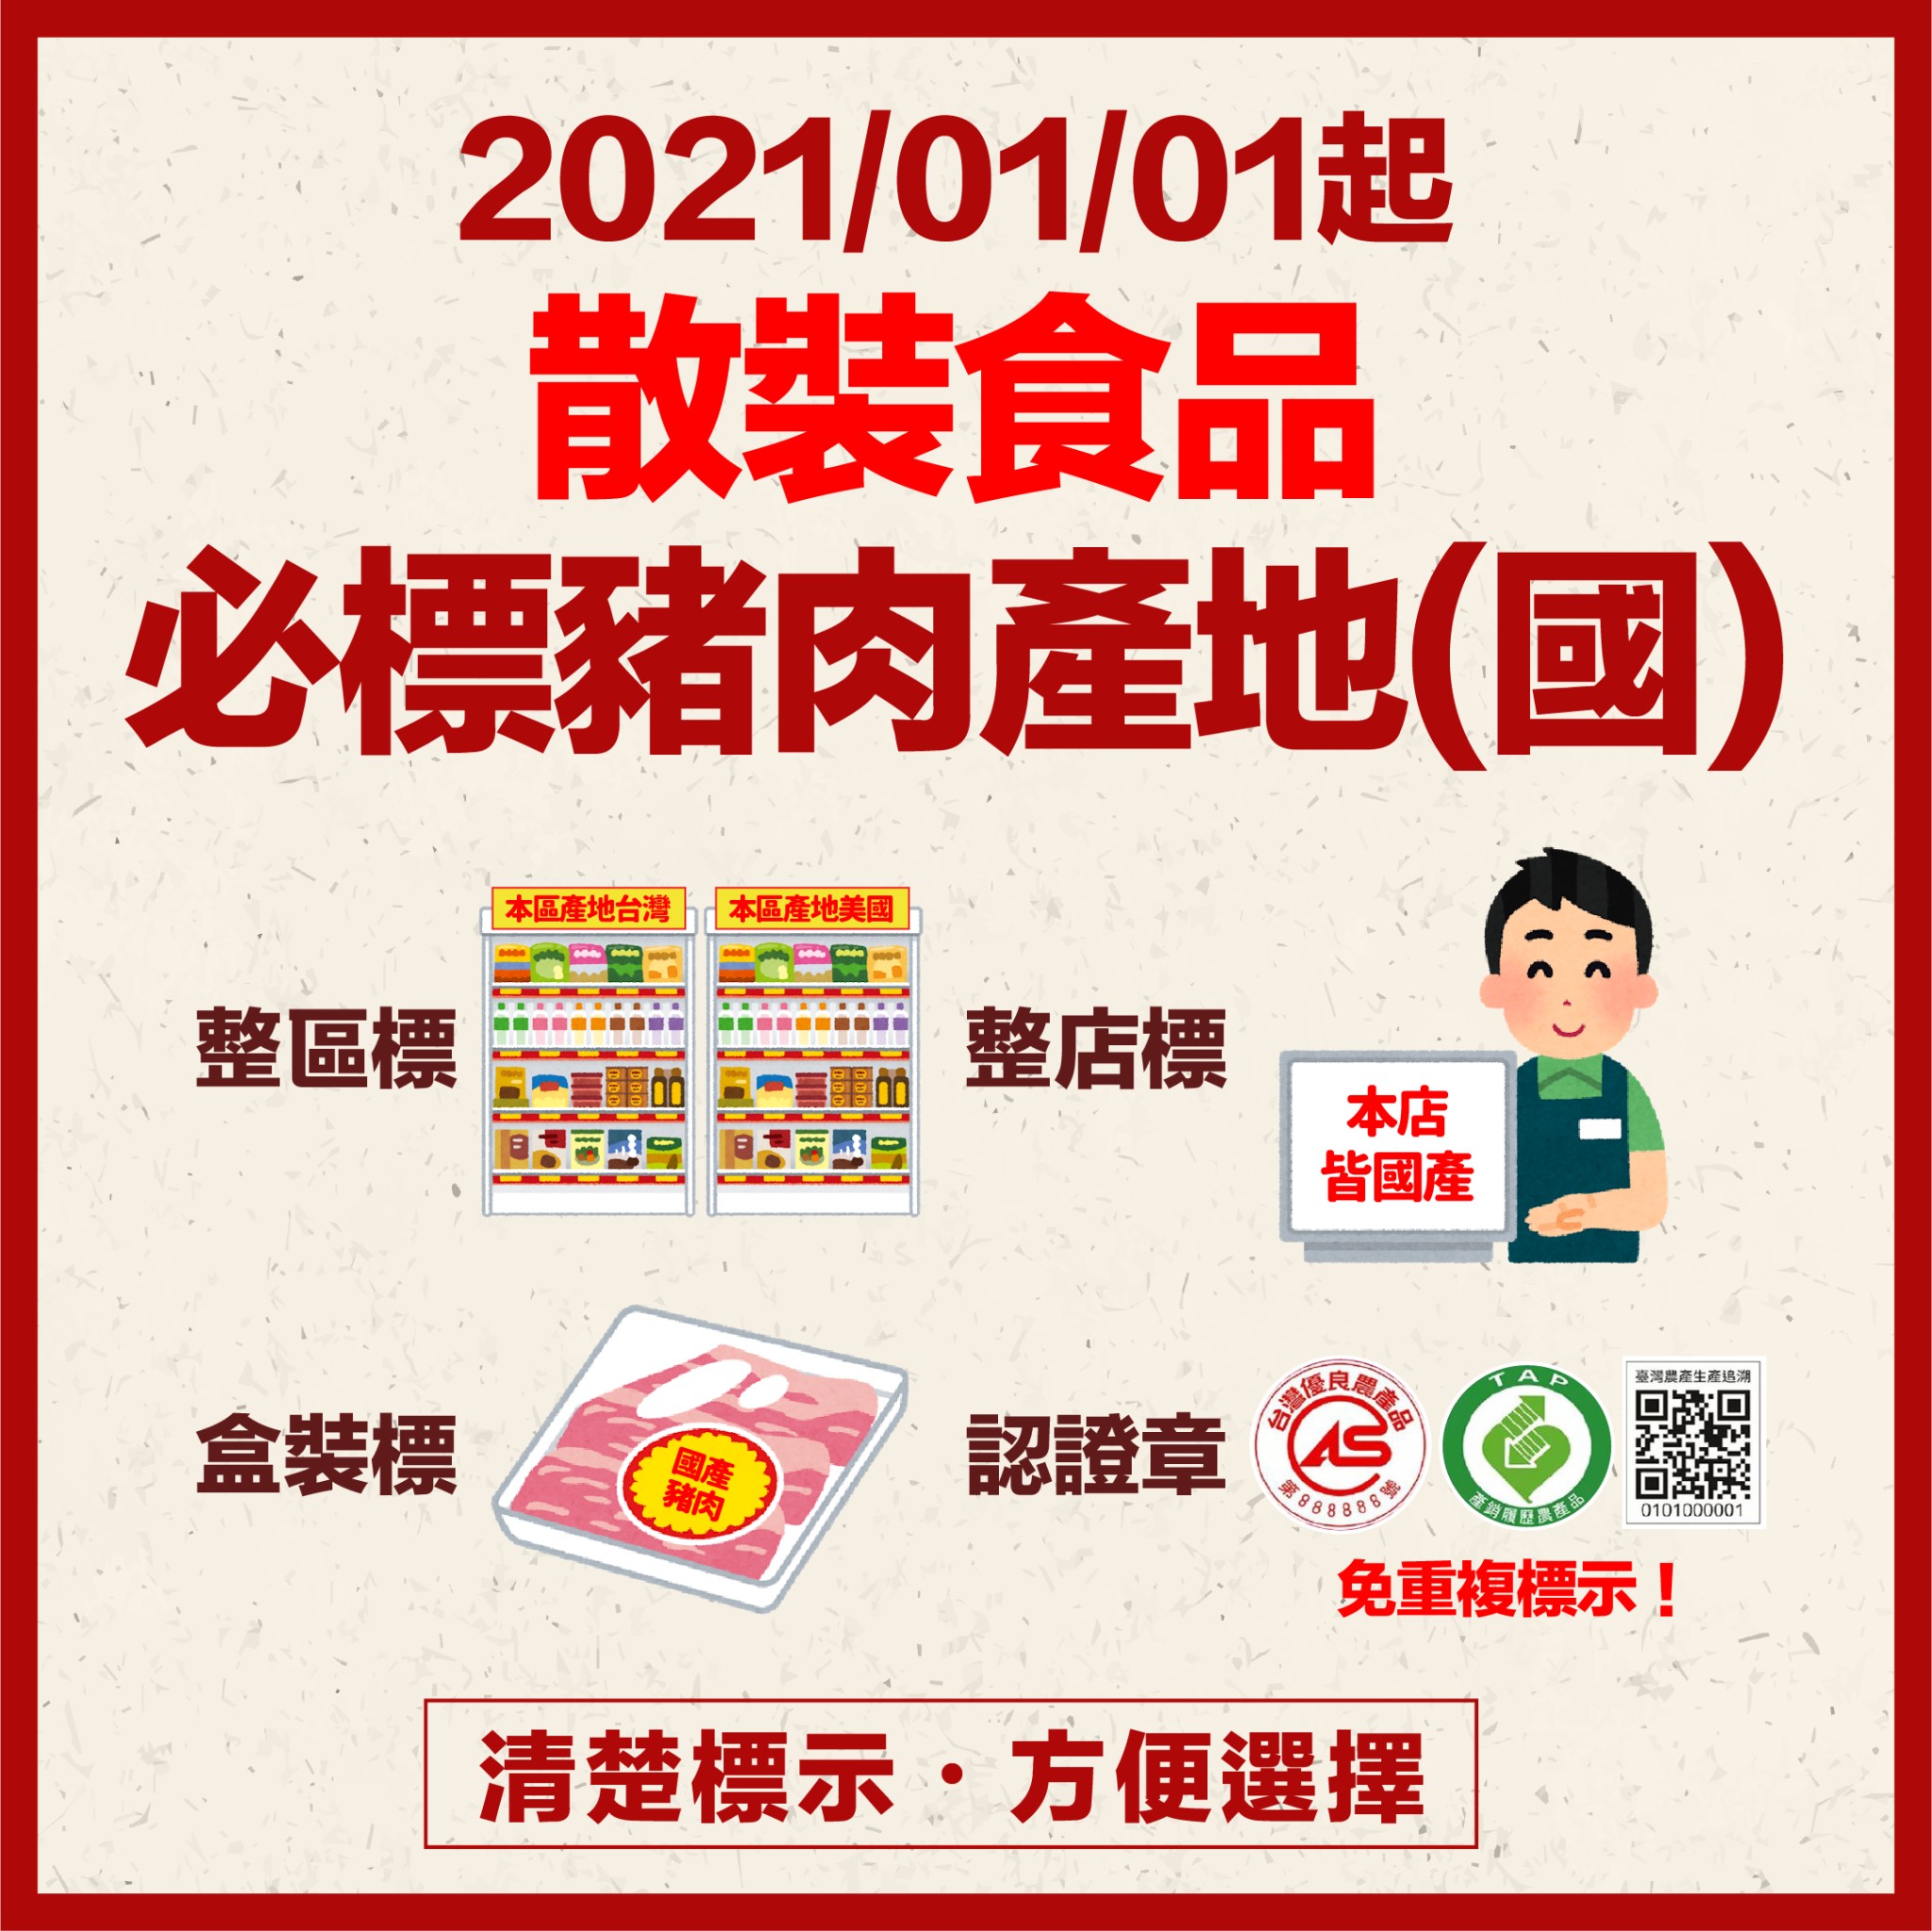 2021/01/01起 散裝食品必標豬肉產地(國)